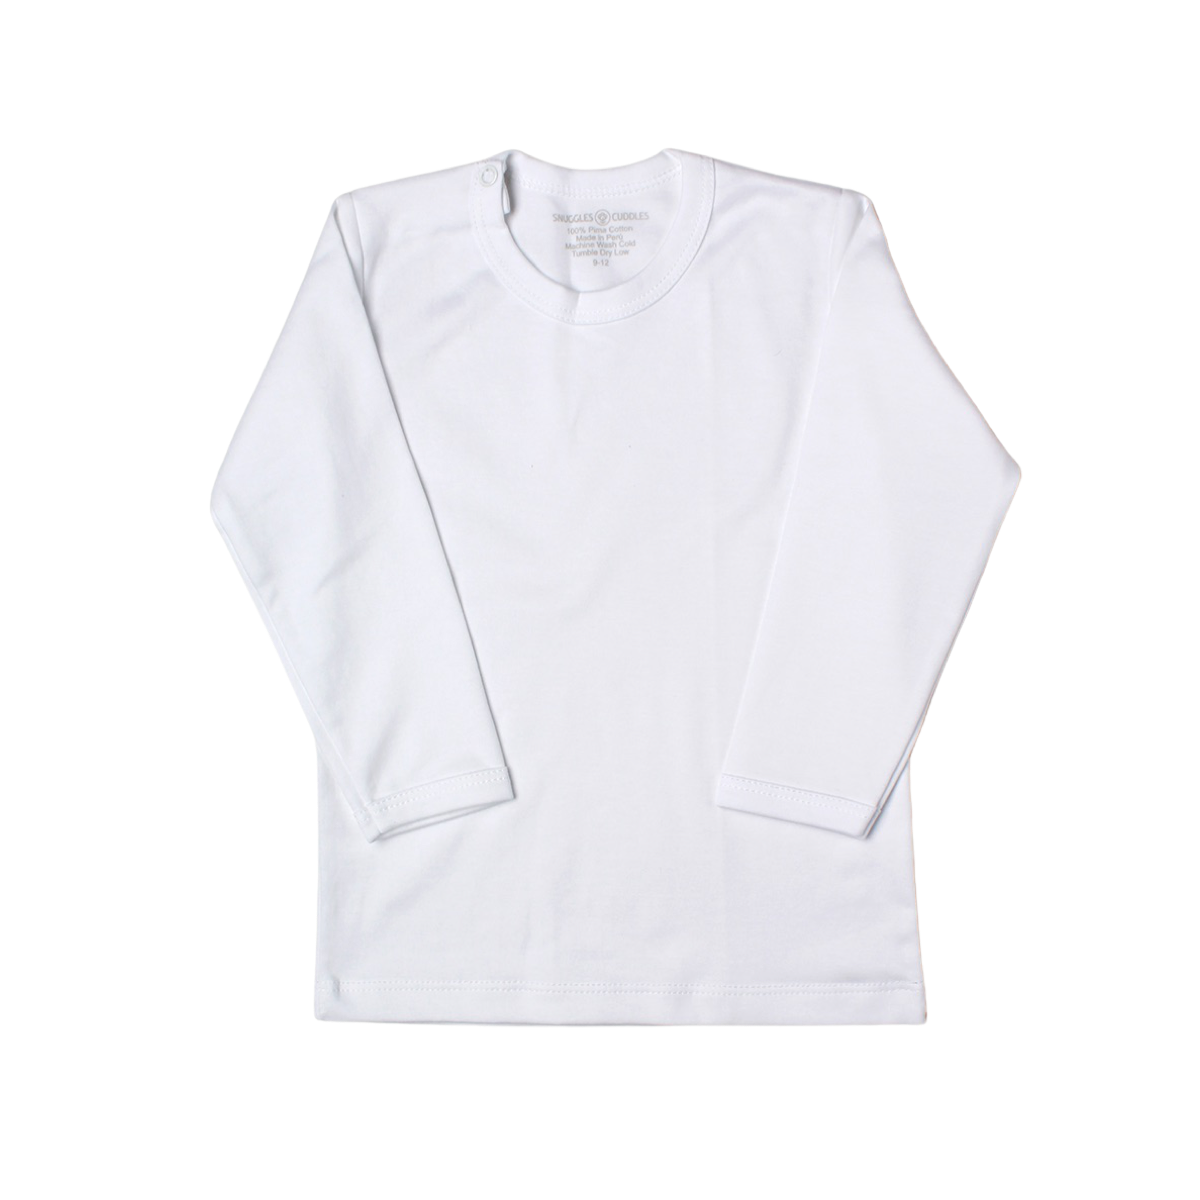 Classic White Shirt in Pima Cotton 